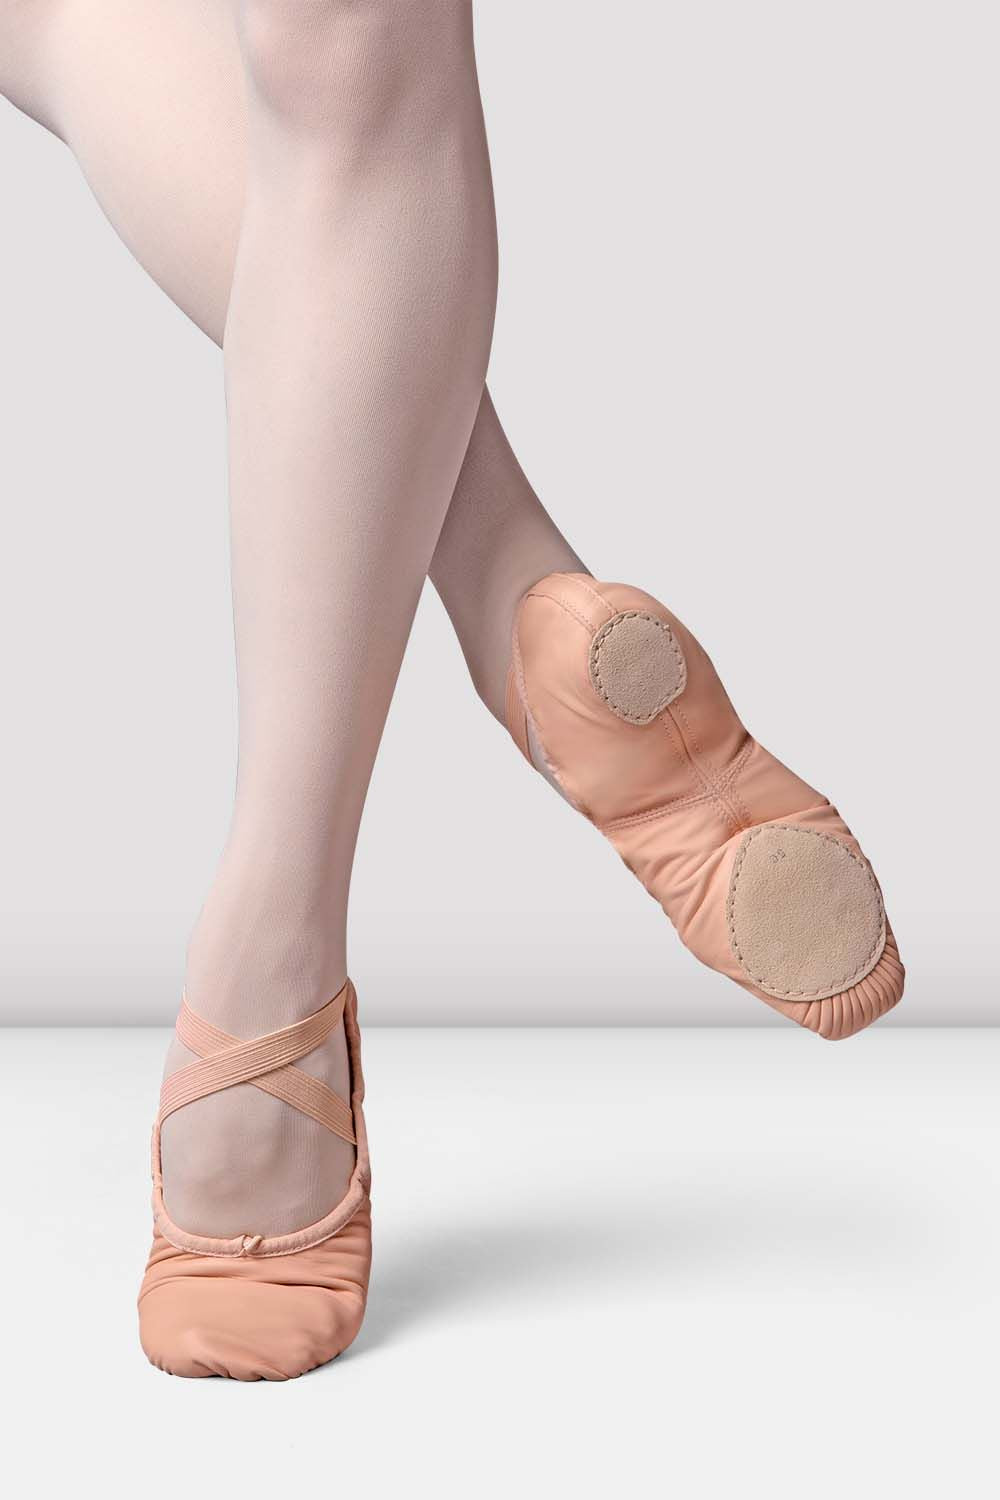 Best Dance Sneakers: Capezio vs. Bloch • dance socks bcn